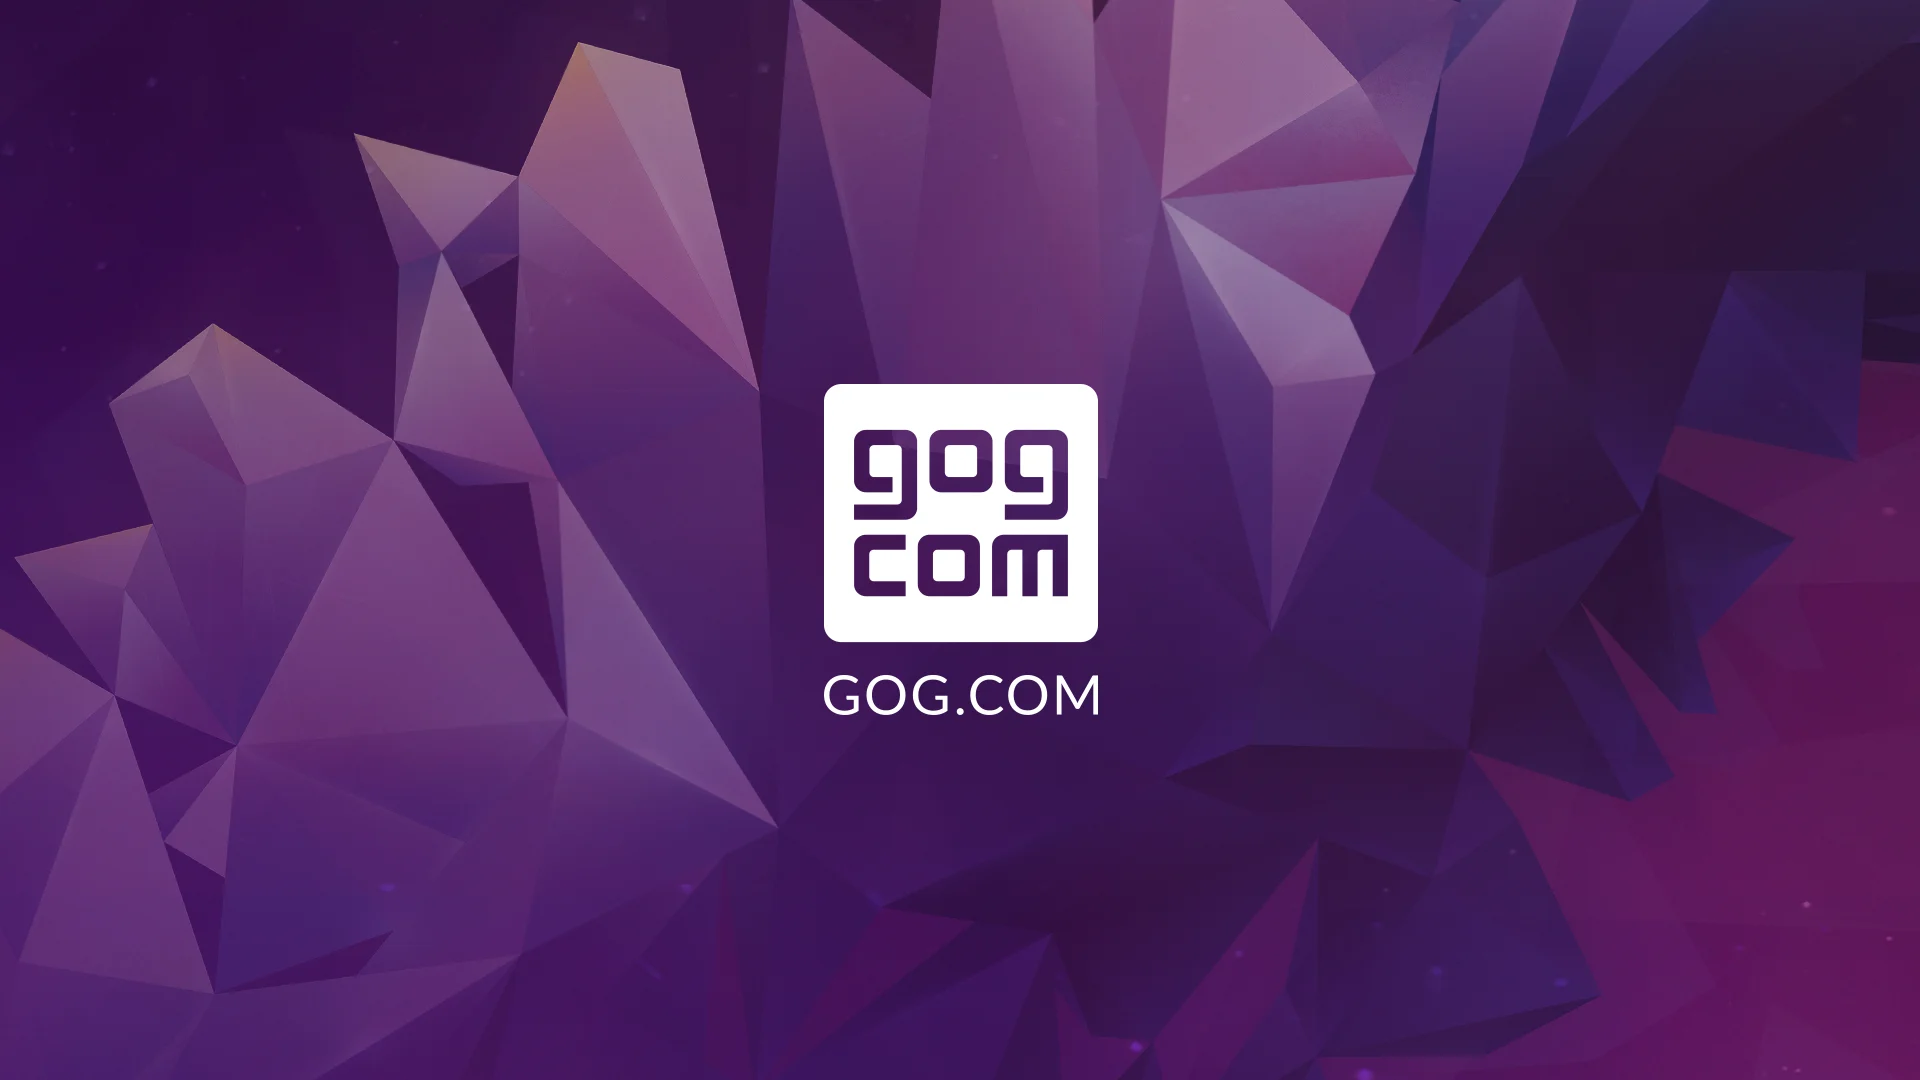 Цифровой магазин GOG.com пообещал, что c 16 апреля будет дарить пользователям игры из их вишлистов. Накануне этой акции Канобу и GOG.com решили разыграть среди читателей несколько сотен ключей.